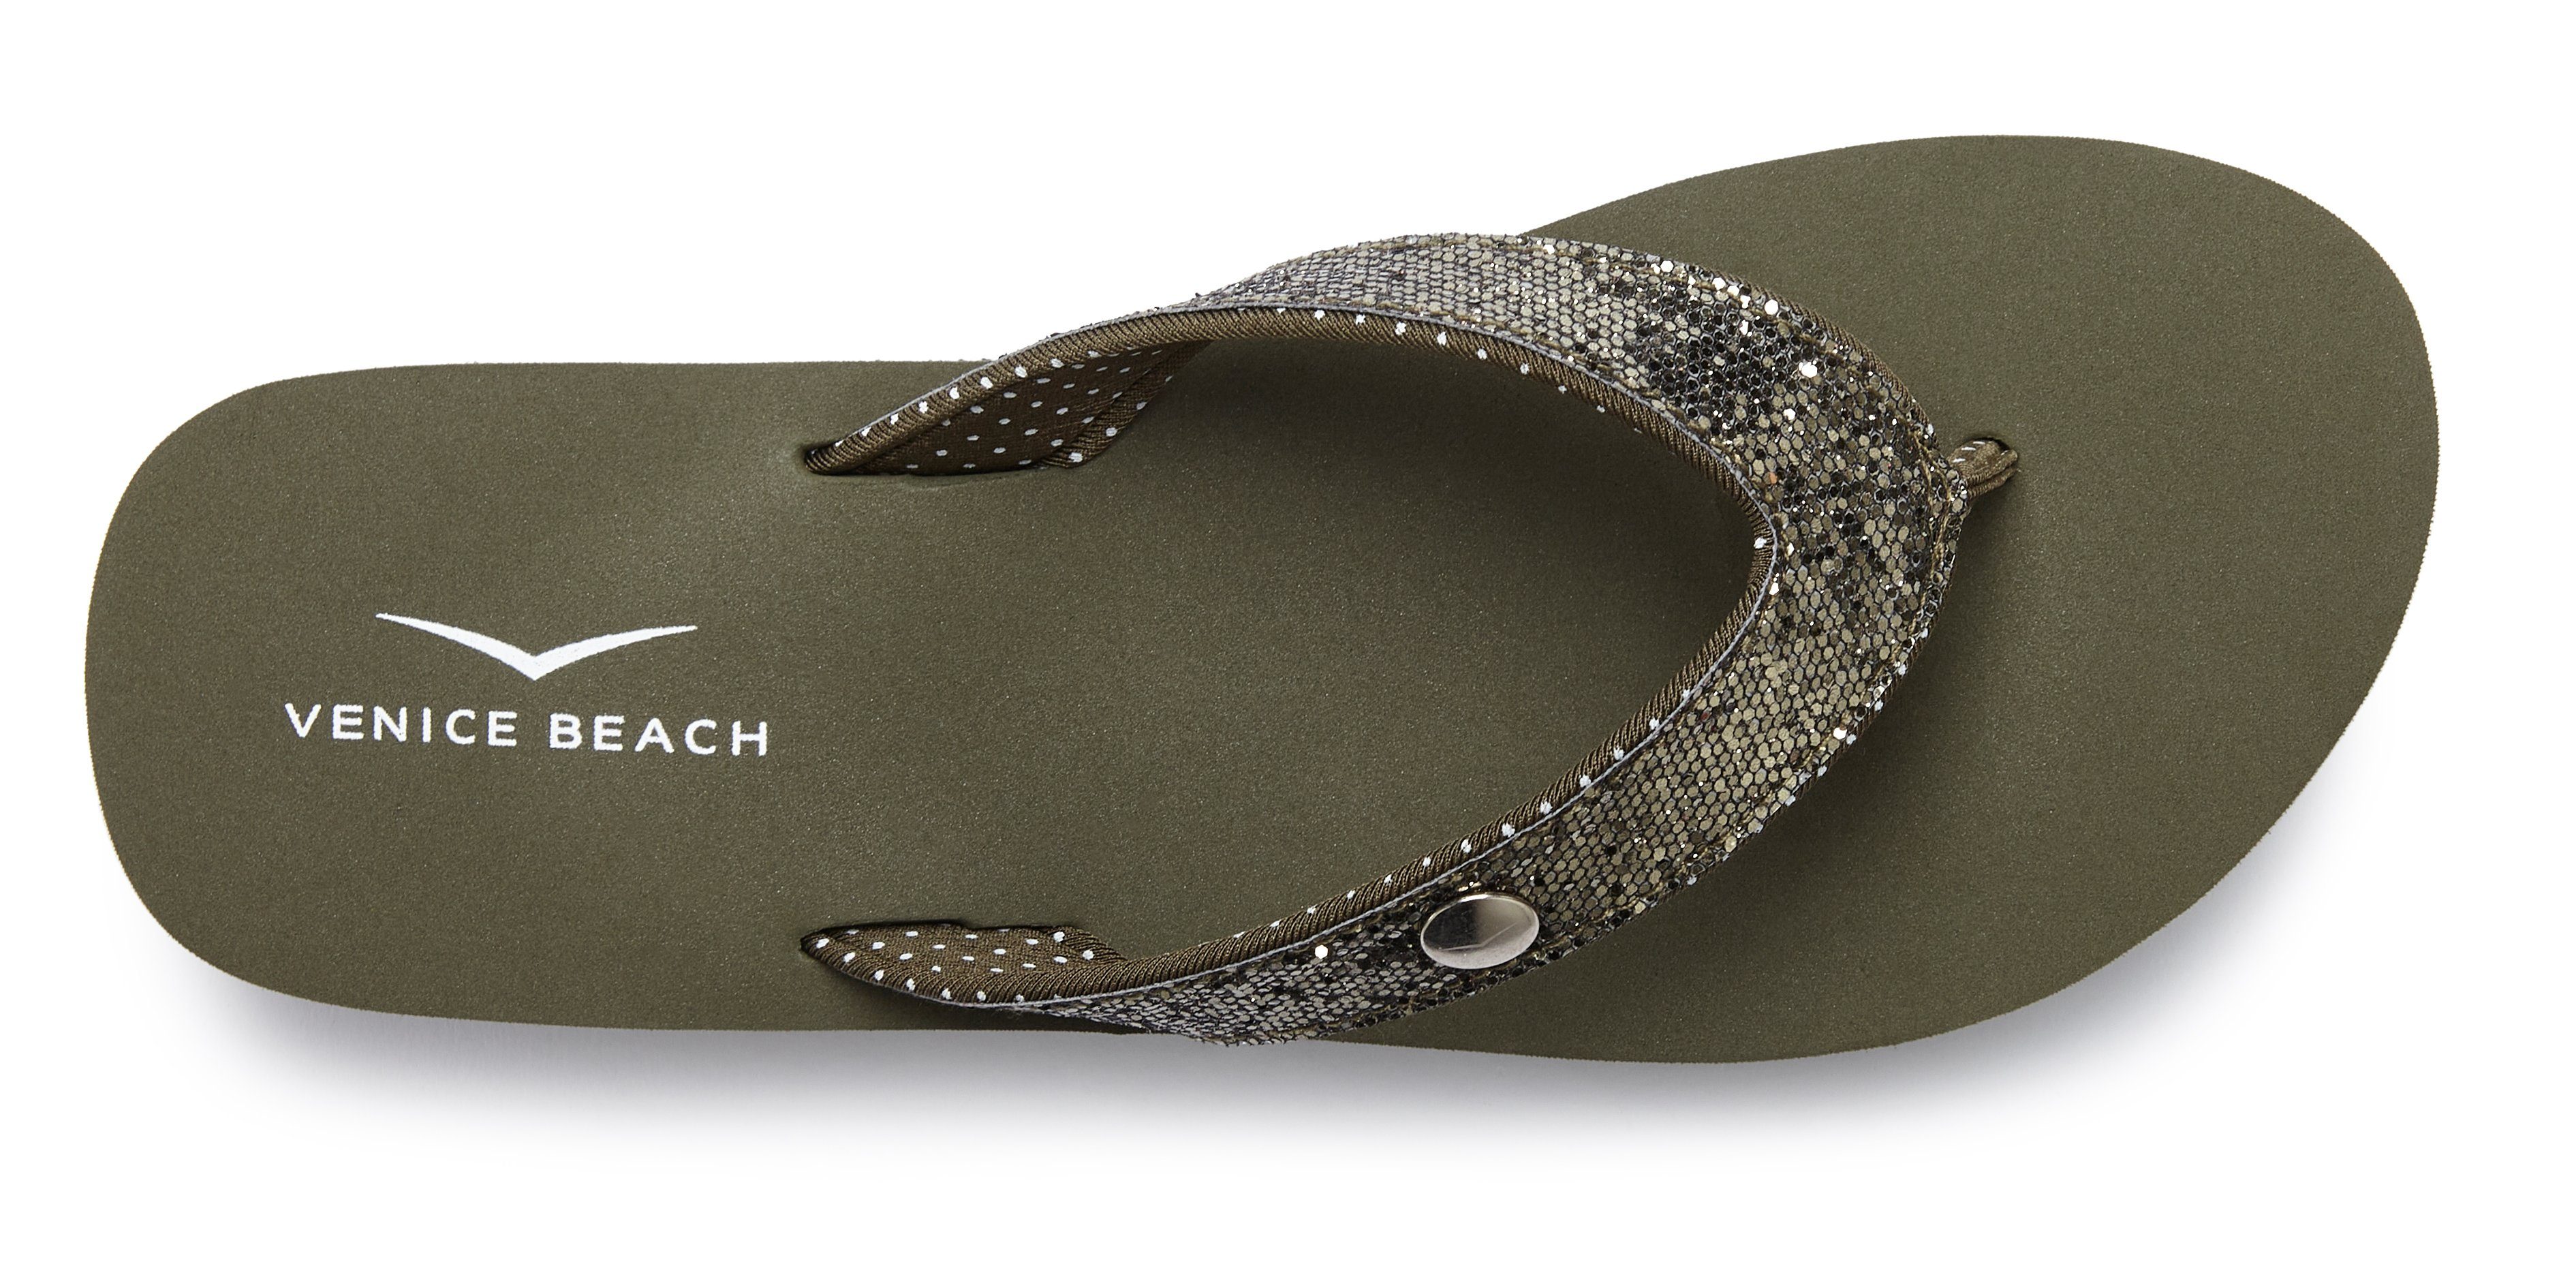 Venice Beach Badezehentrenner Sandale, Pantolette, olivgrün VEGAN mit ultraleicht Badeschuh Glitzerband